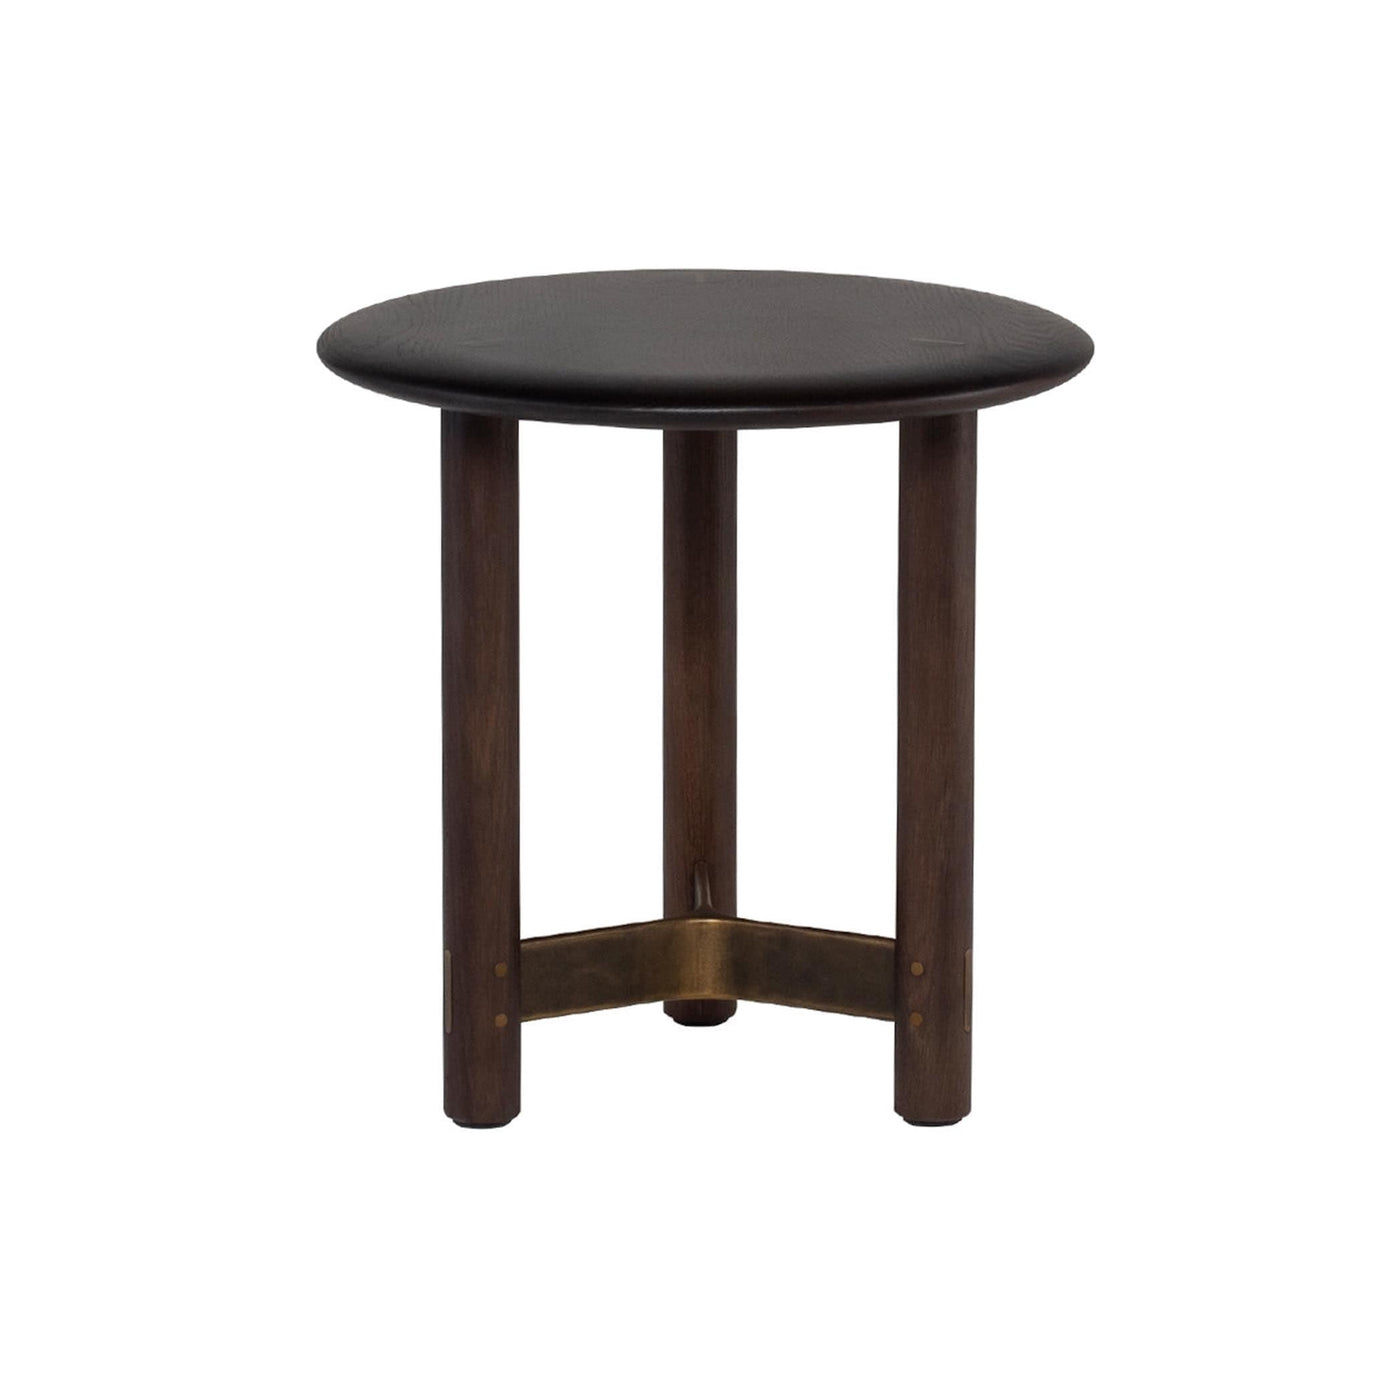 Découvrez la table d'appoint ronde Stilt : une pièce d'exception qui marie raffinement et matériaux captivants, offrant une polyvalence d'utilisation pour s'adapter à tous les espaces. Bois fumé.